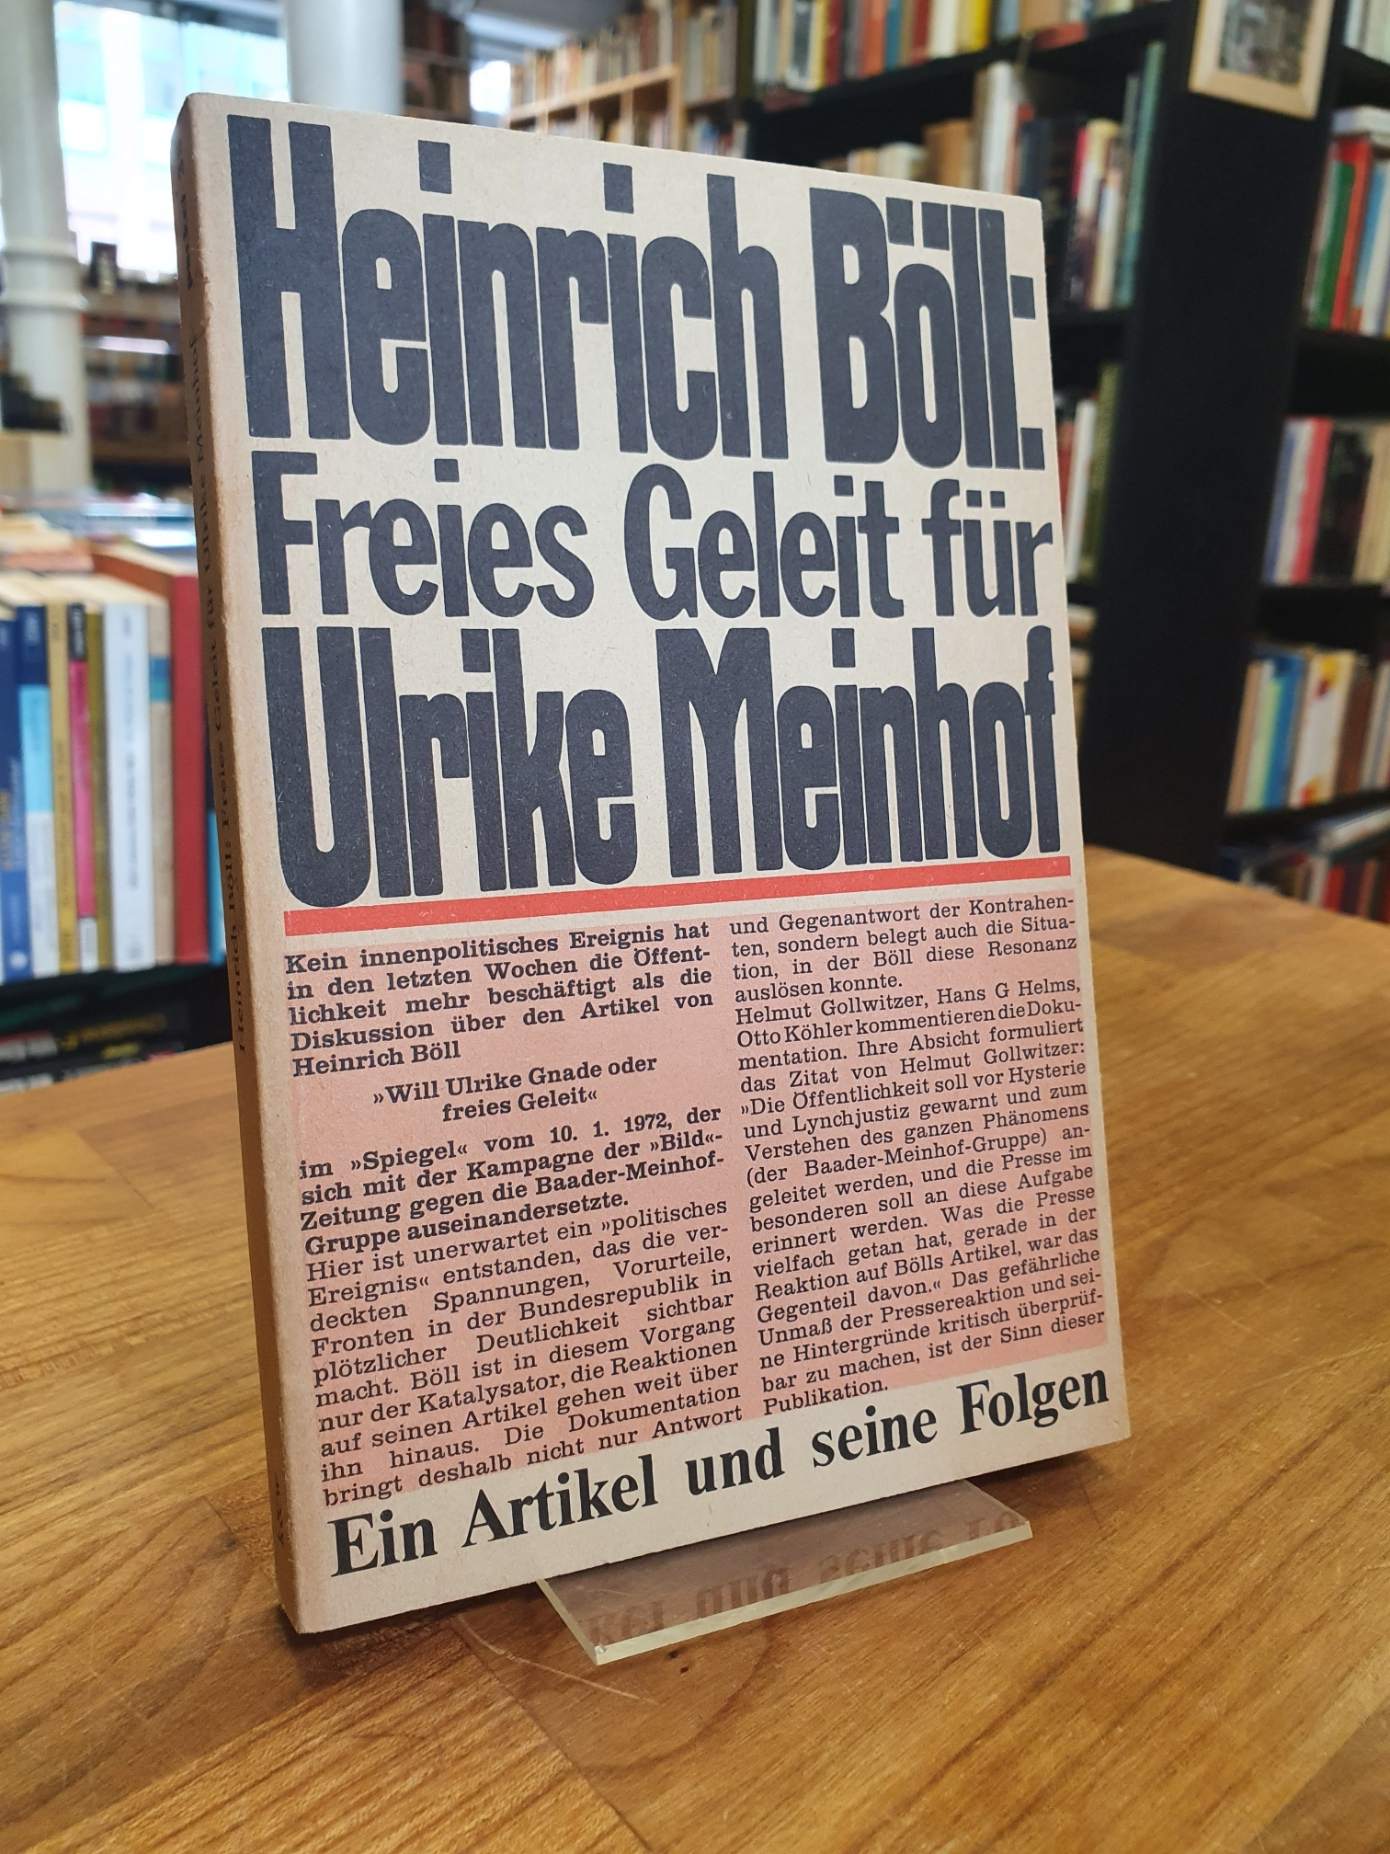 Böll, Heinrich Böll: Freies Geleit für Ulrike Meinhof – Ein Artikel und seine Fo